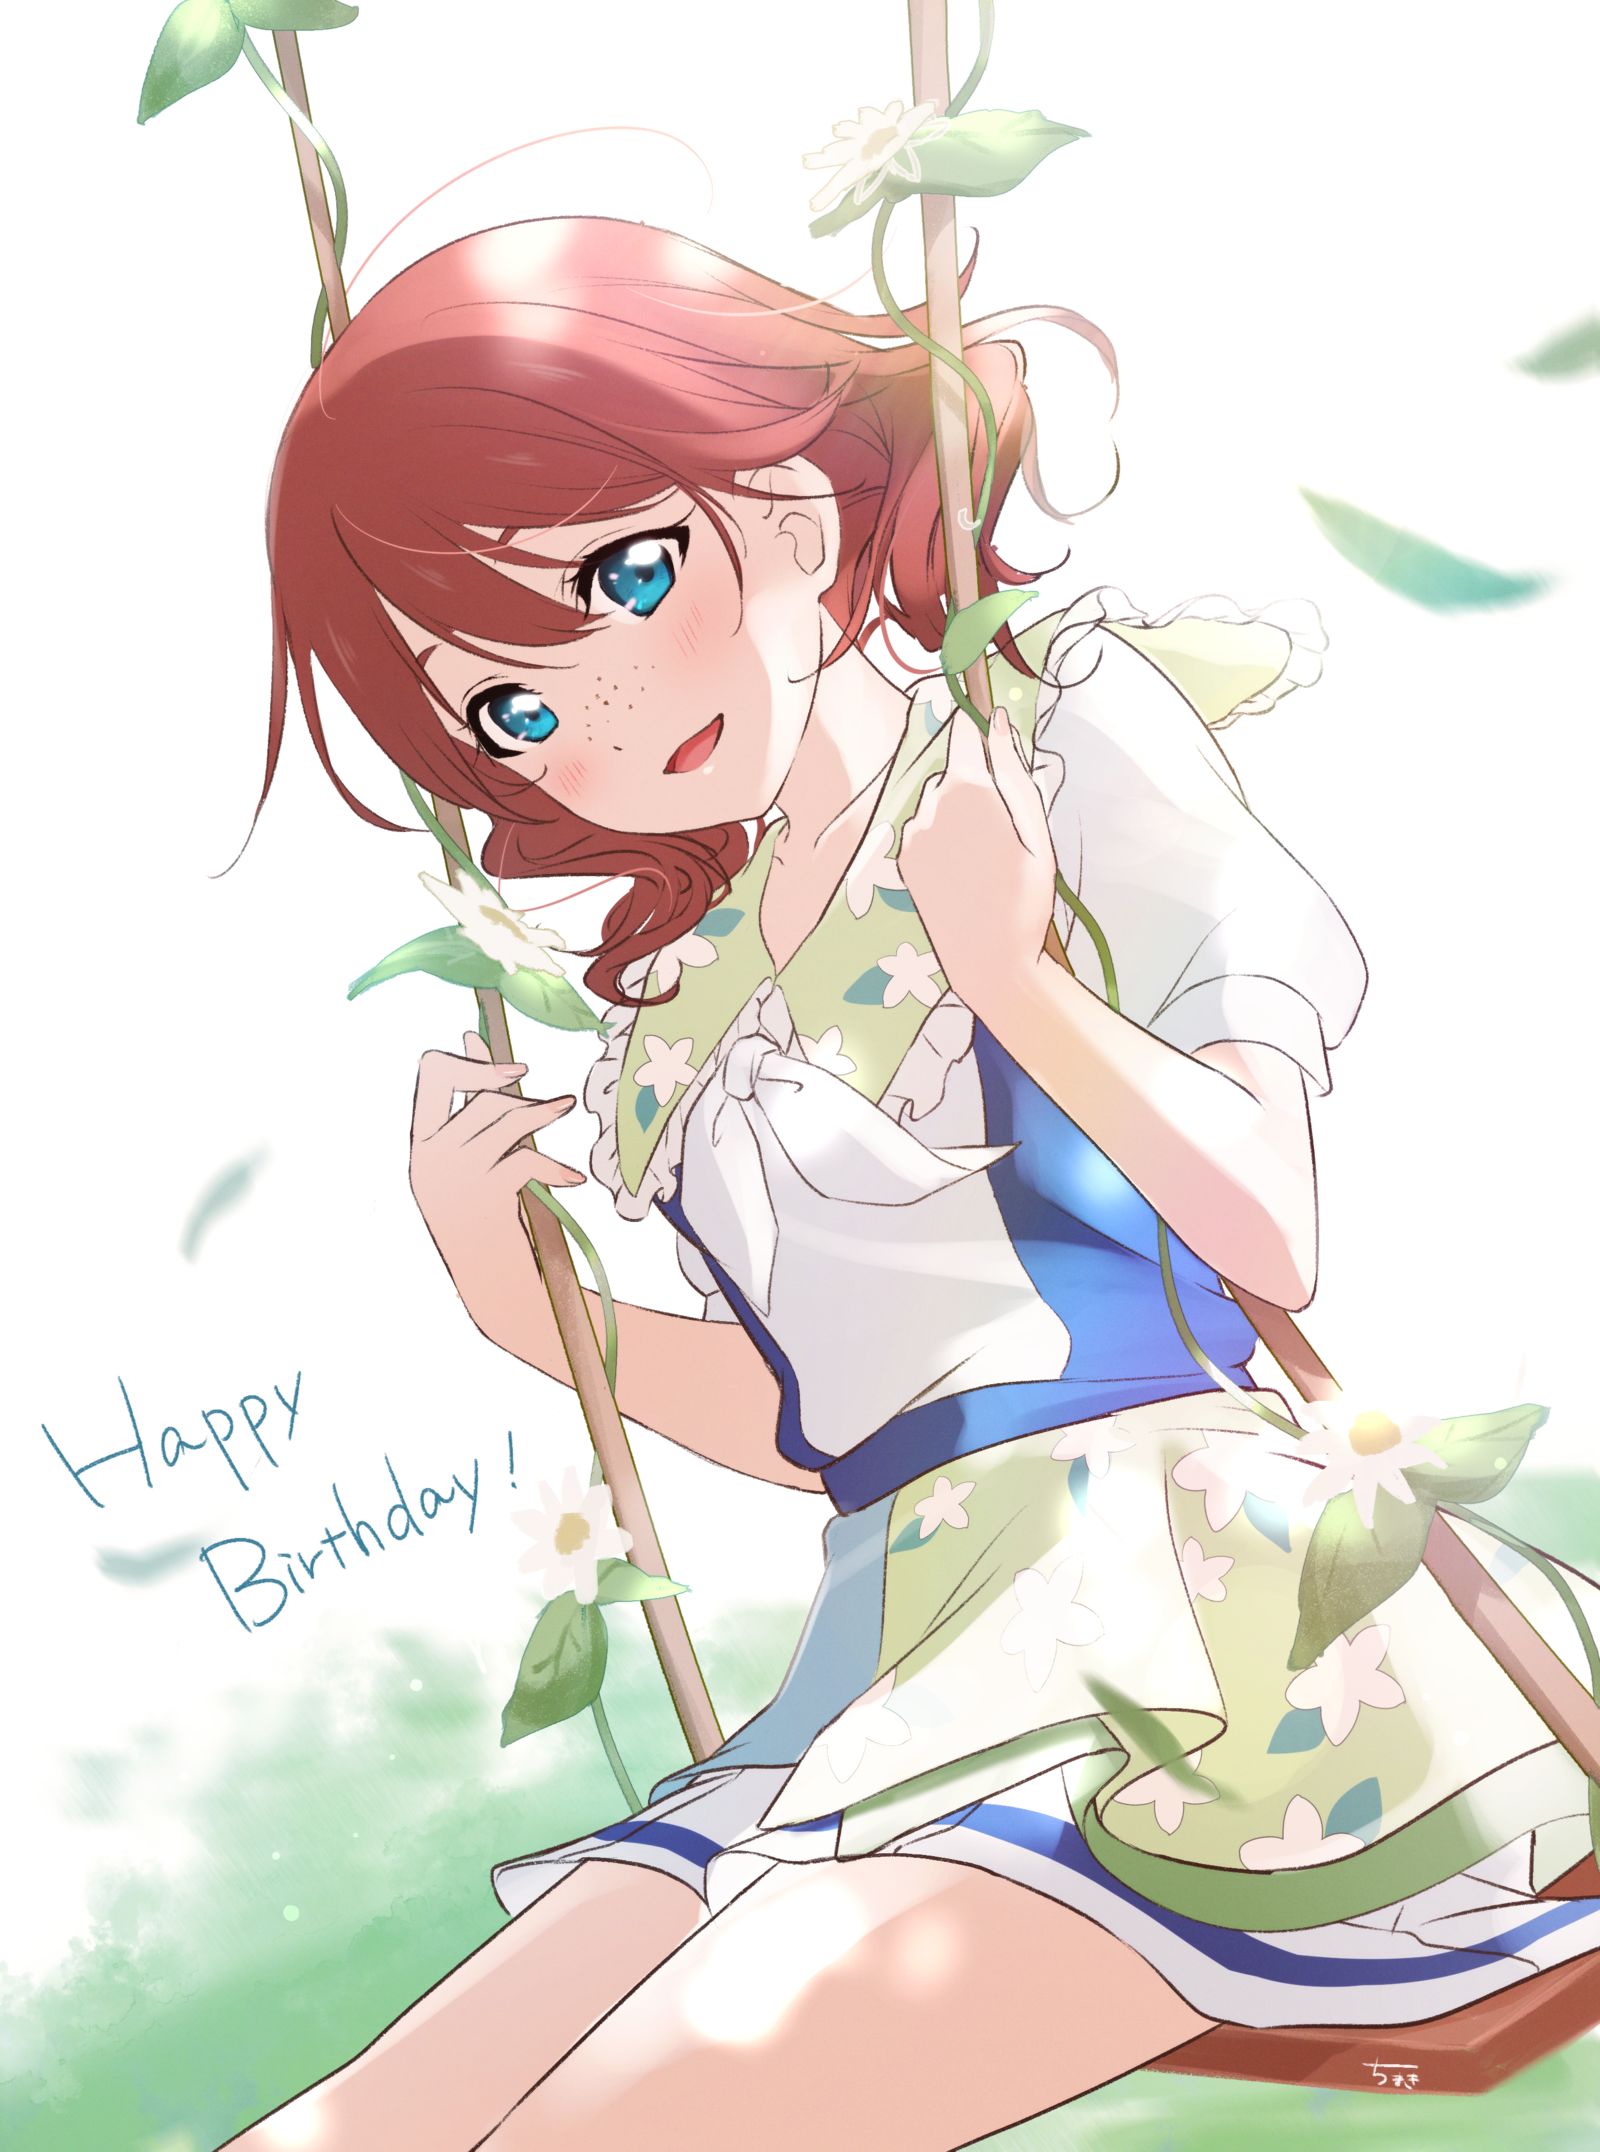 生日快乐！